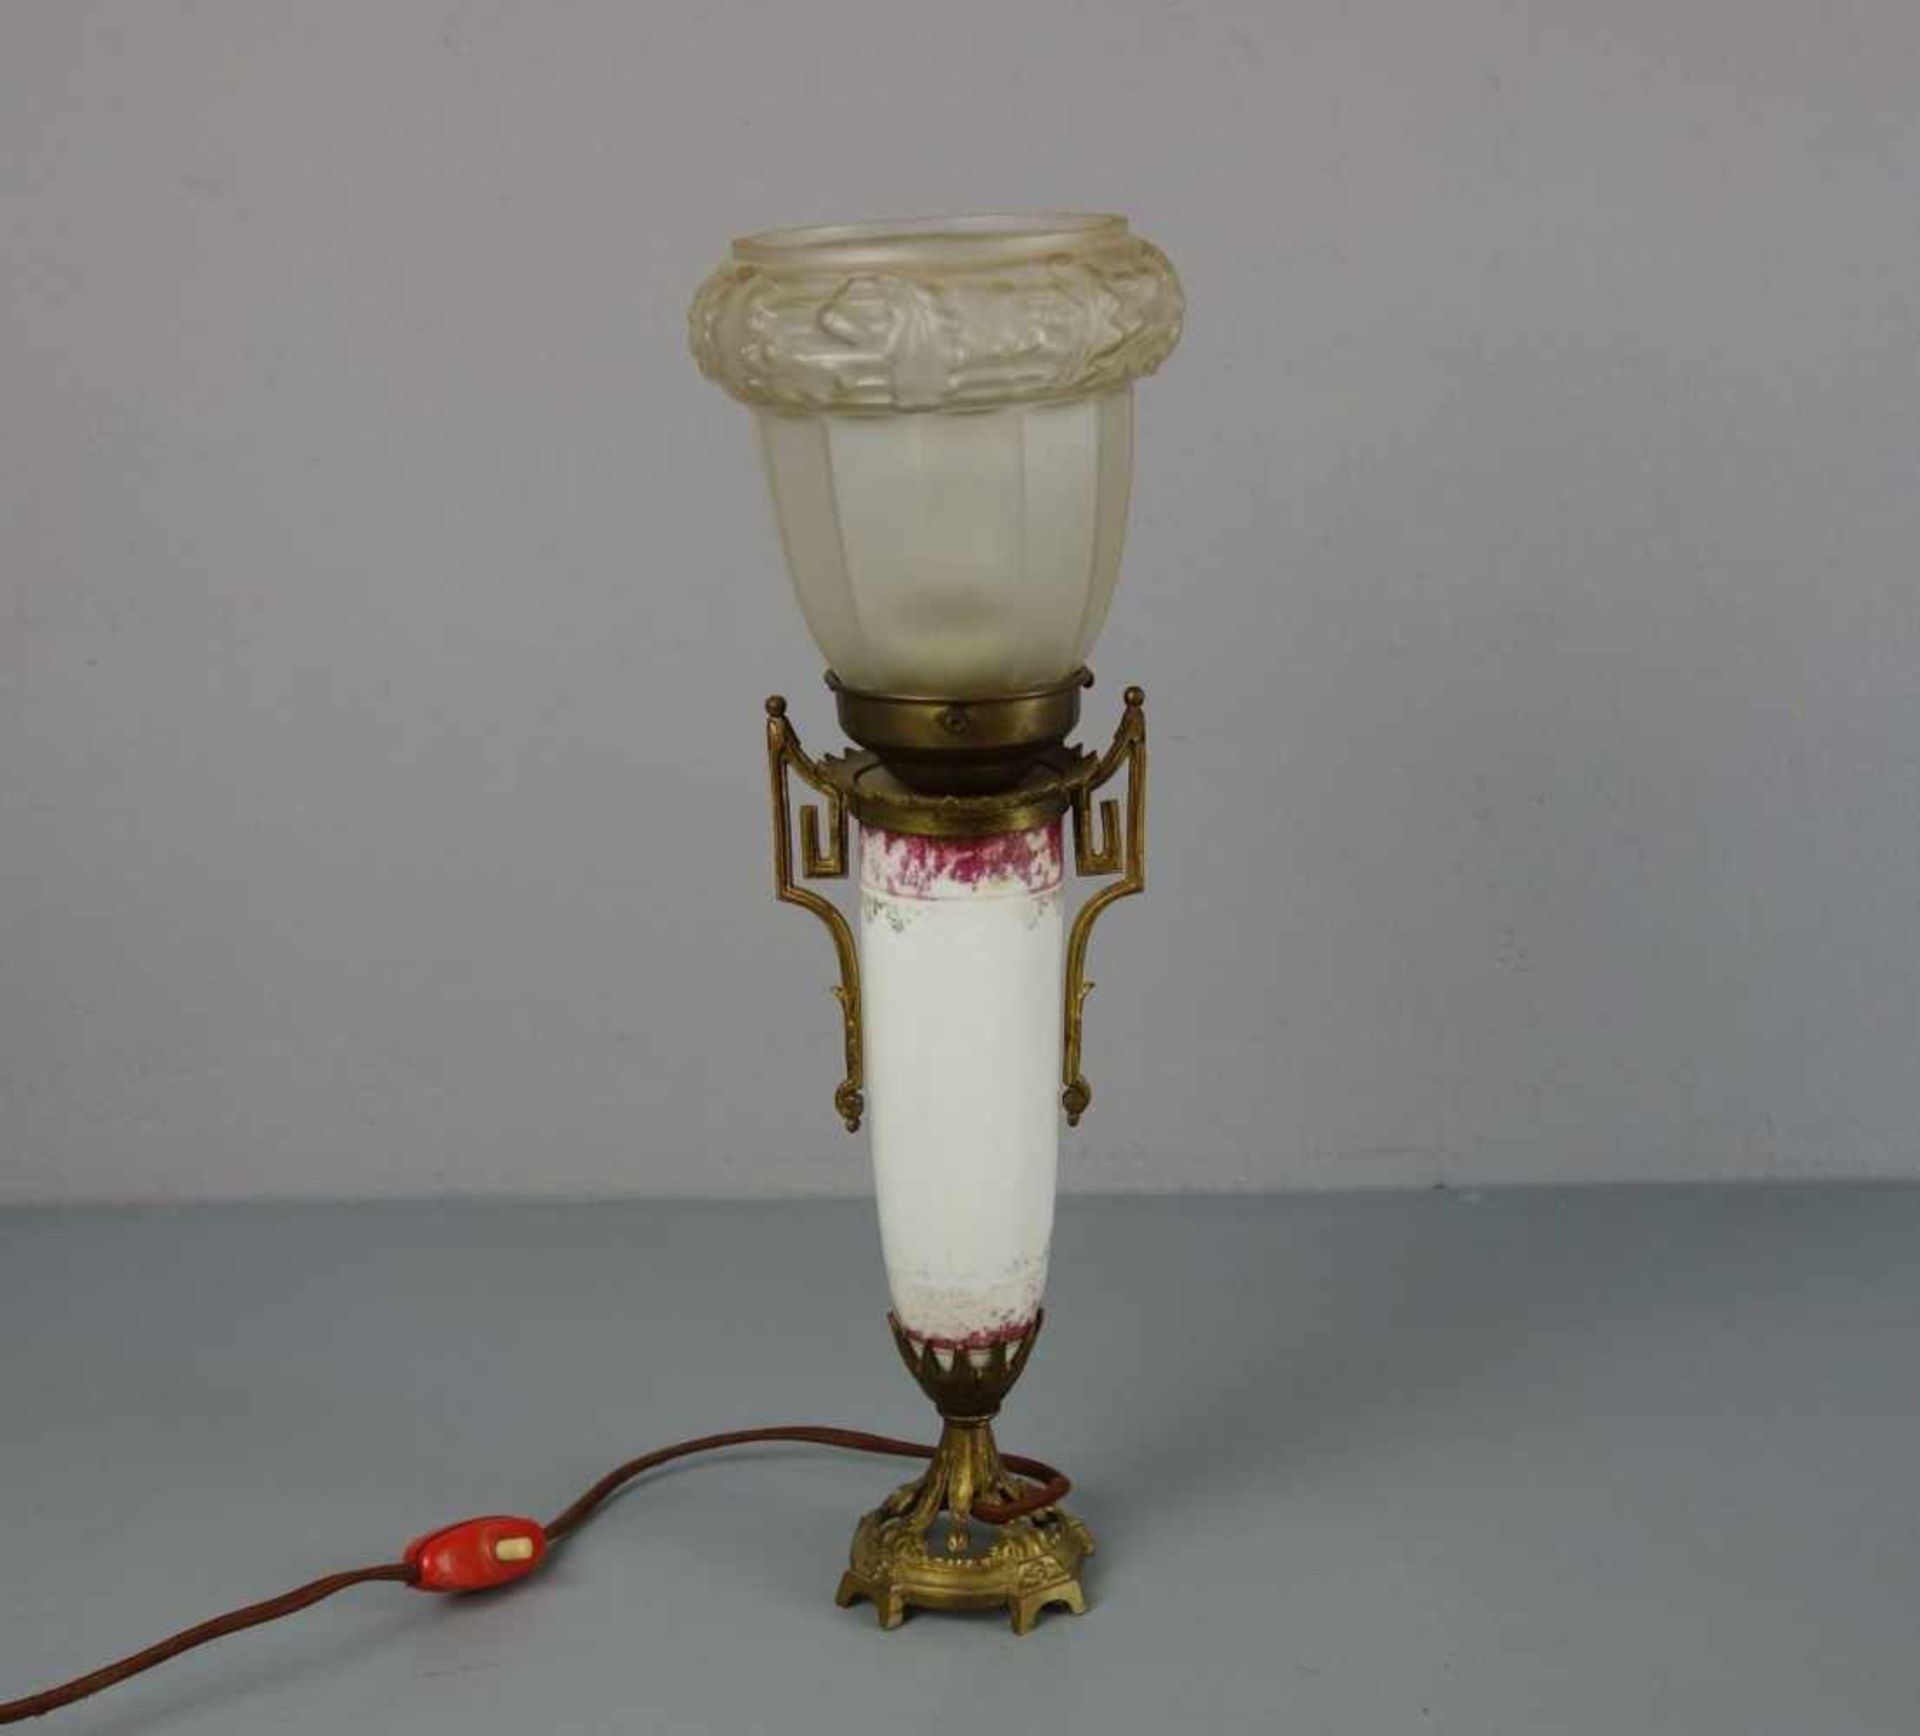 TISCHLAMPE / table lamp, Mariage. Satinierter Lampenschirm mit erhabenem Eichenlaub-Dekor. Schirm - Image 4 of 4